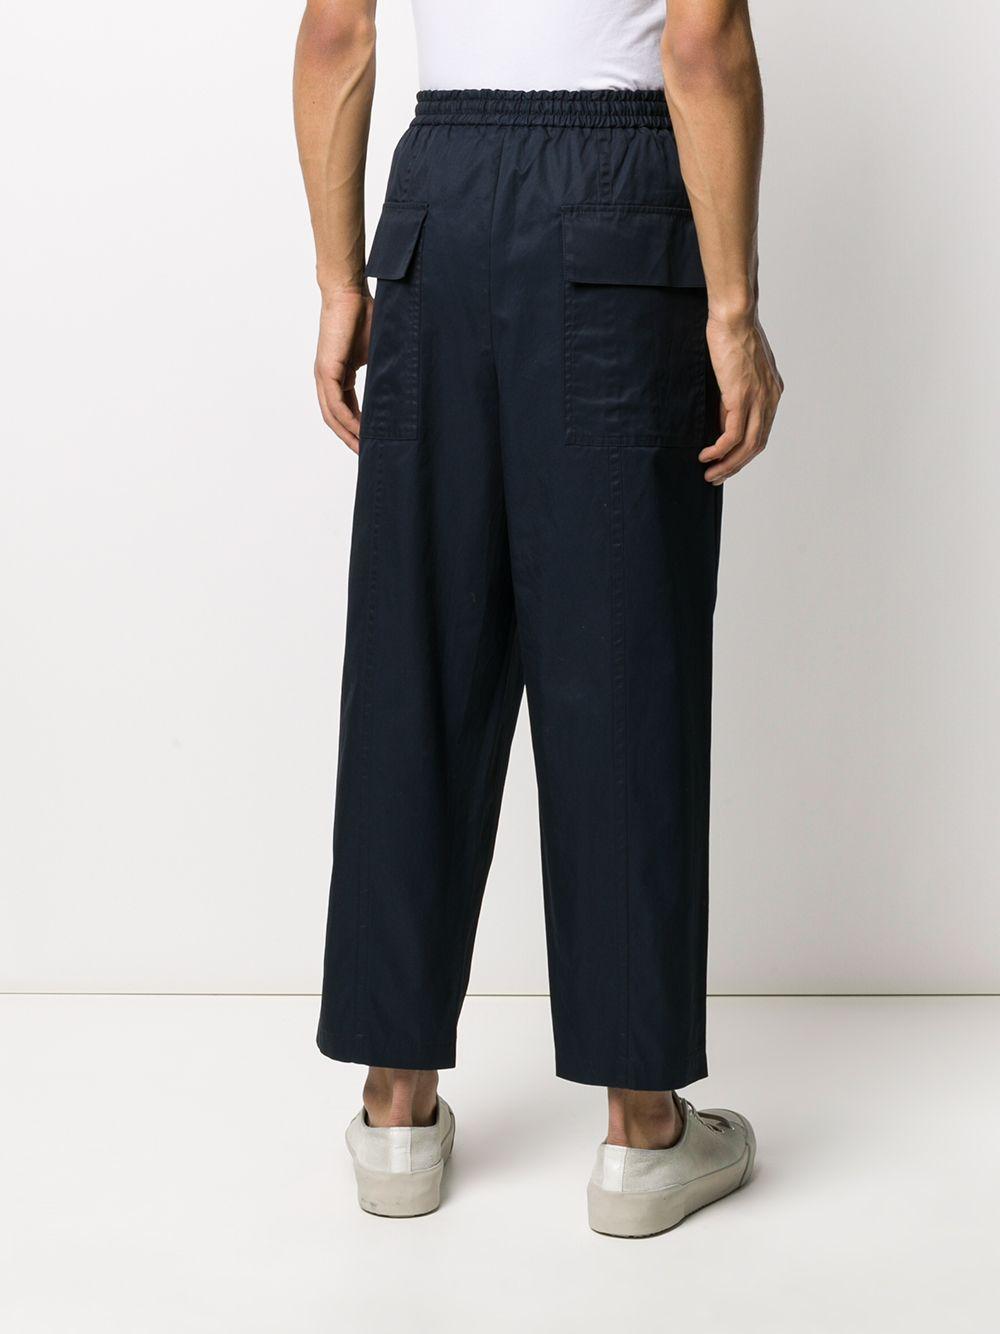 Jil Sander Cotton Wide-leg Trousers in Blue for Men - Lyst